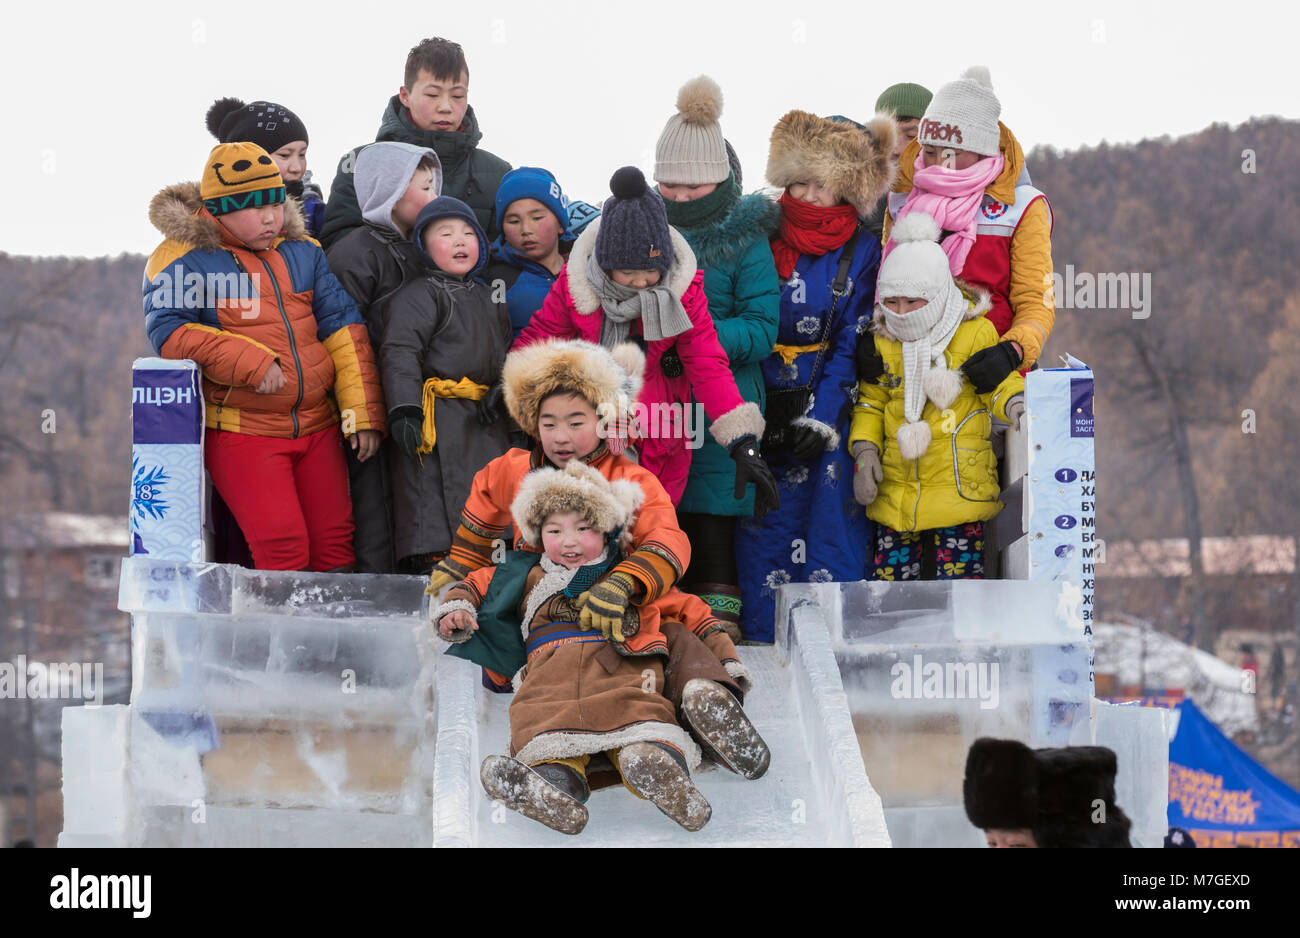 Hatgal, Mongolei, 4. März 2018: mongolische Kinder in traditioneller Kleidung auf einem zugefrorenen See Khuvsgul, unten kommen, eine Folie madeout von Eis Stockfoto